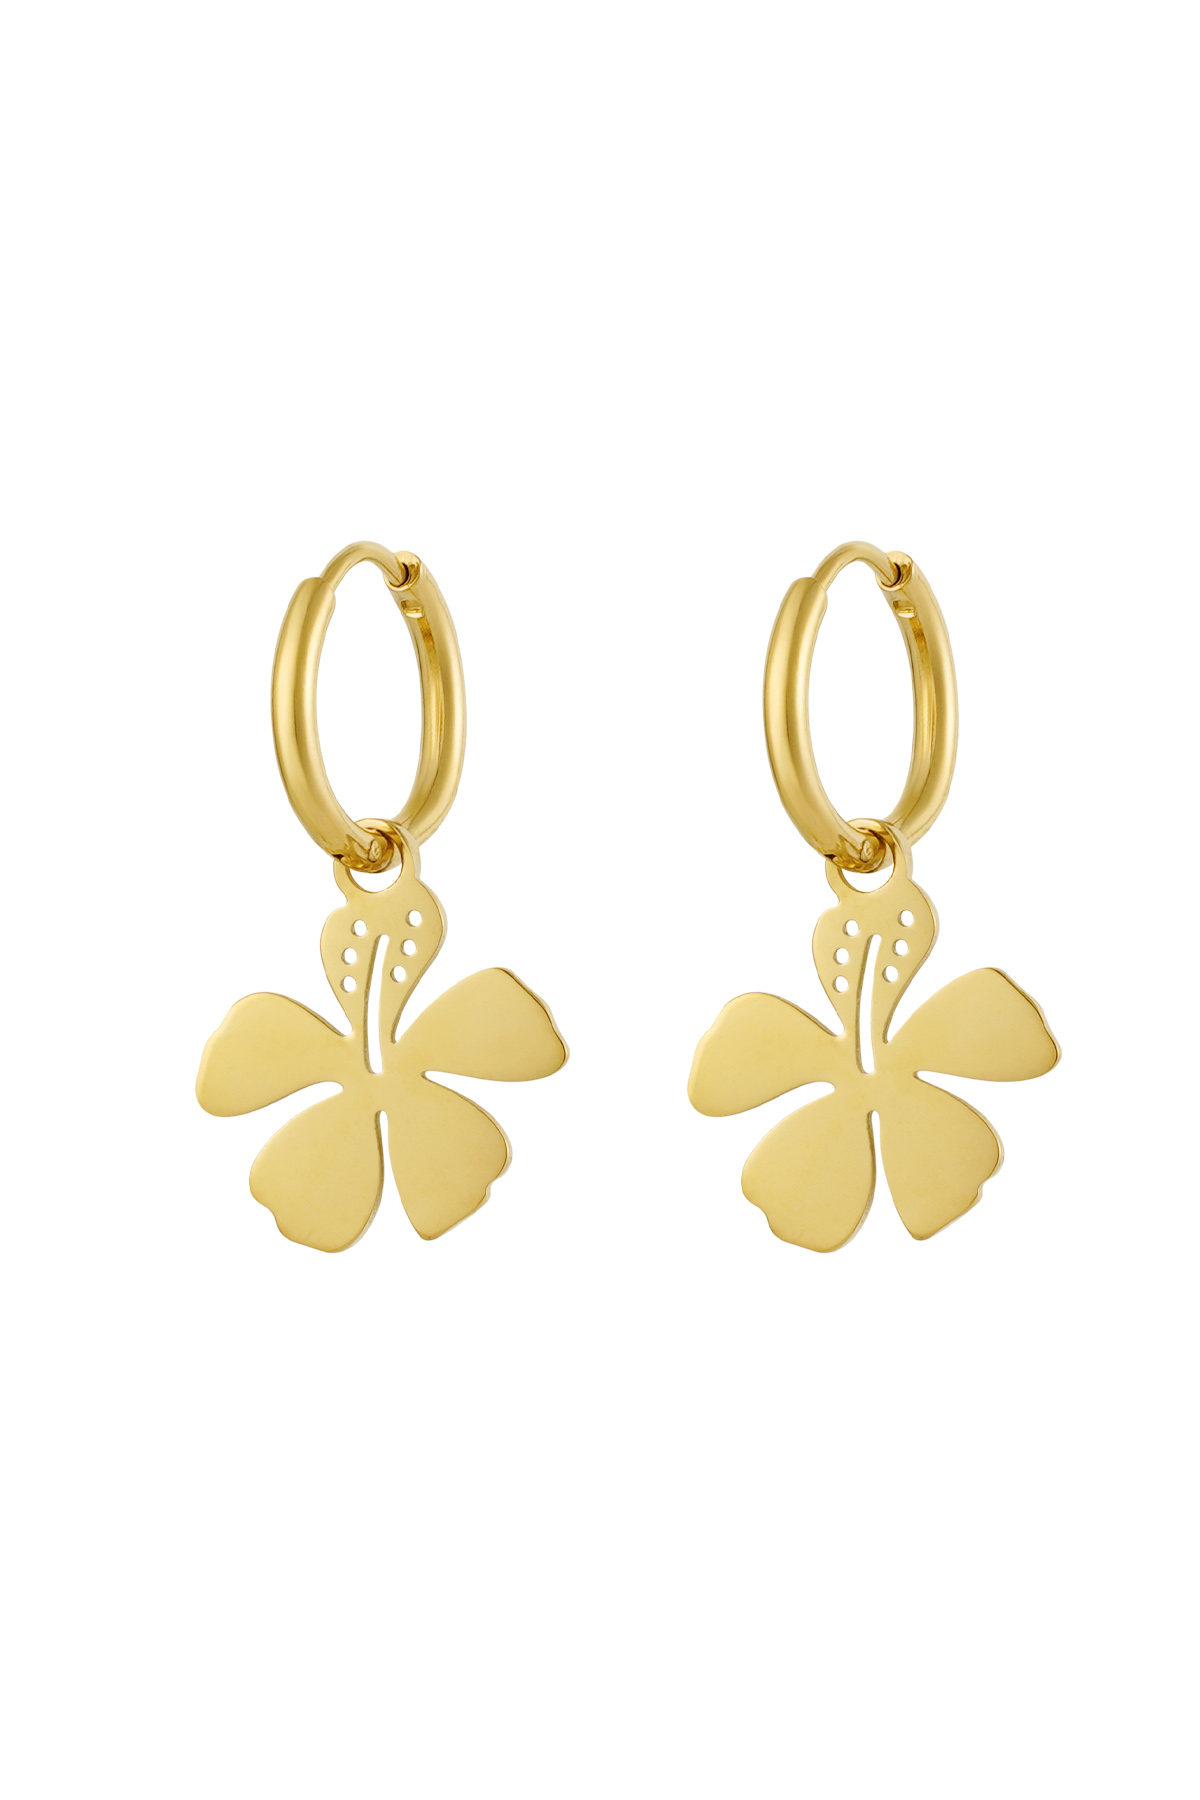 Earrings flower charm - gold